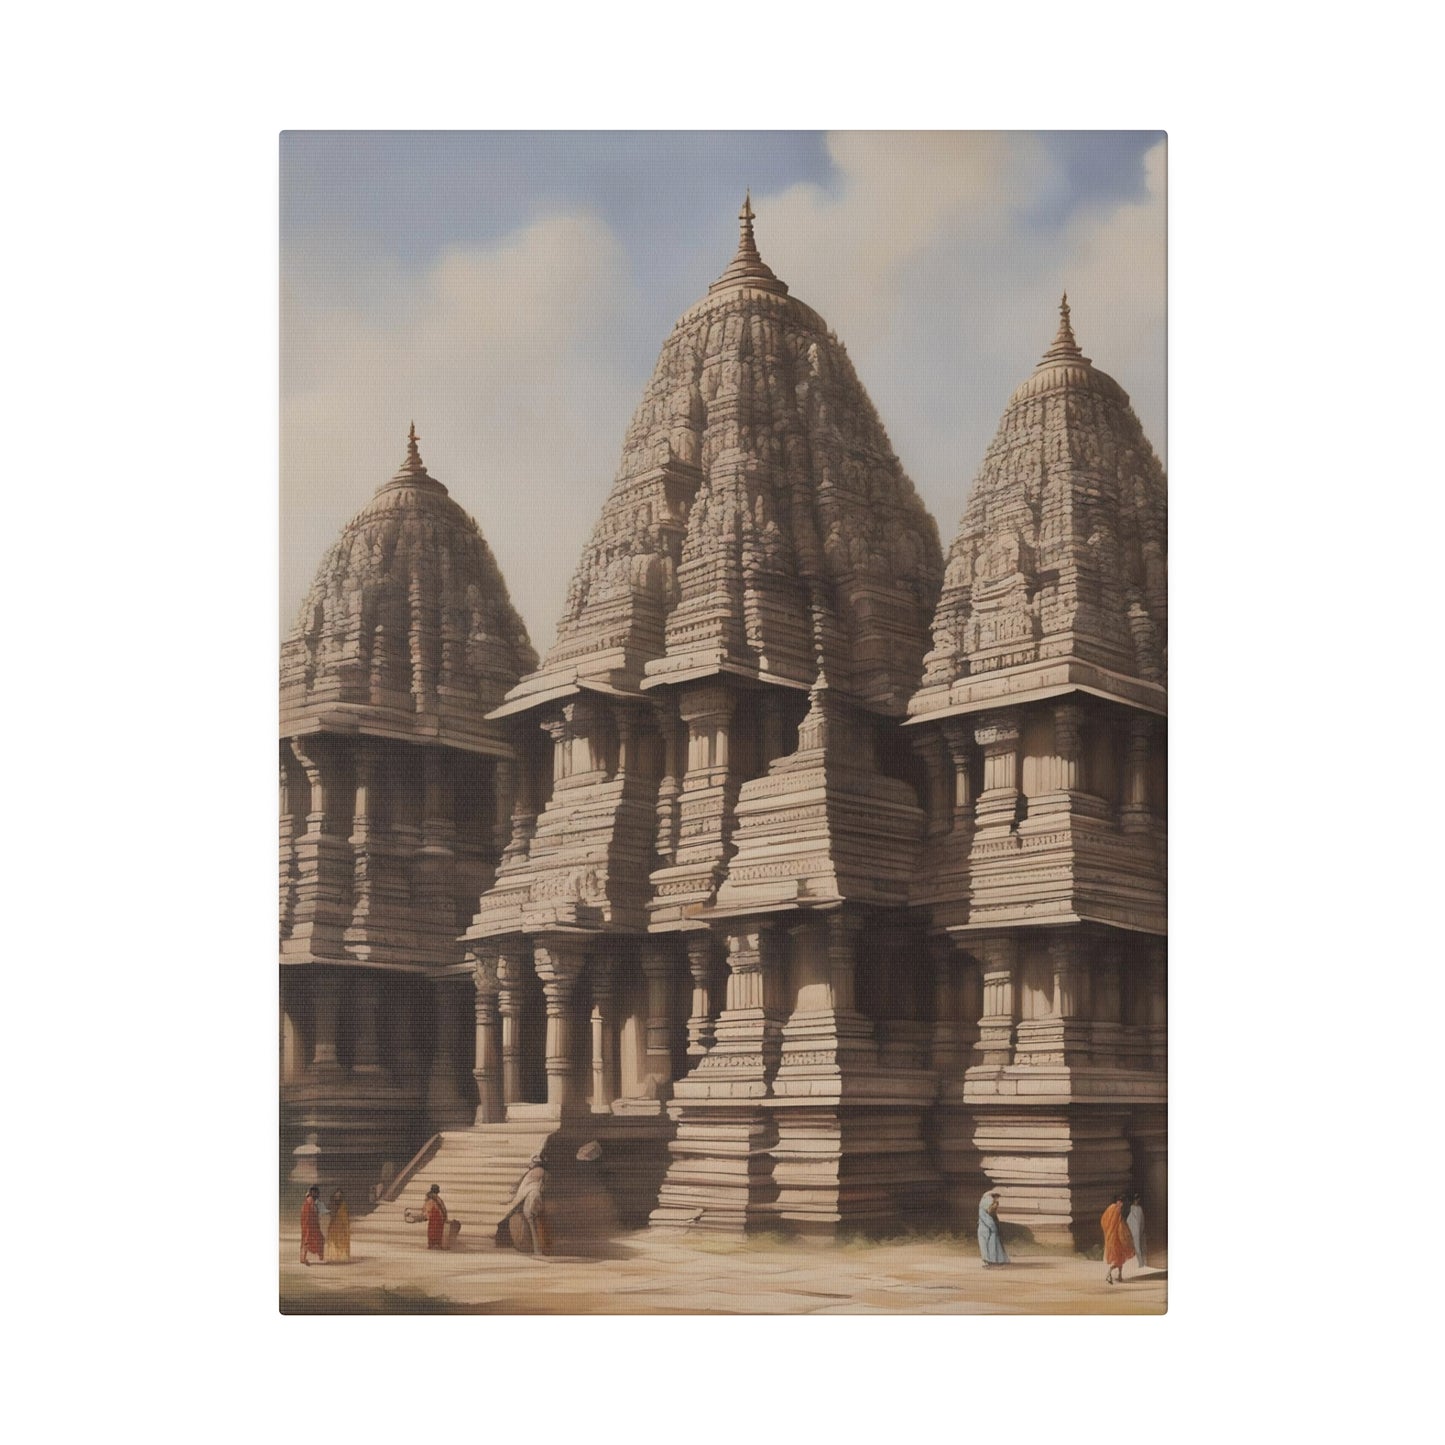 Echoes of Devotion: Ancient Temple